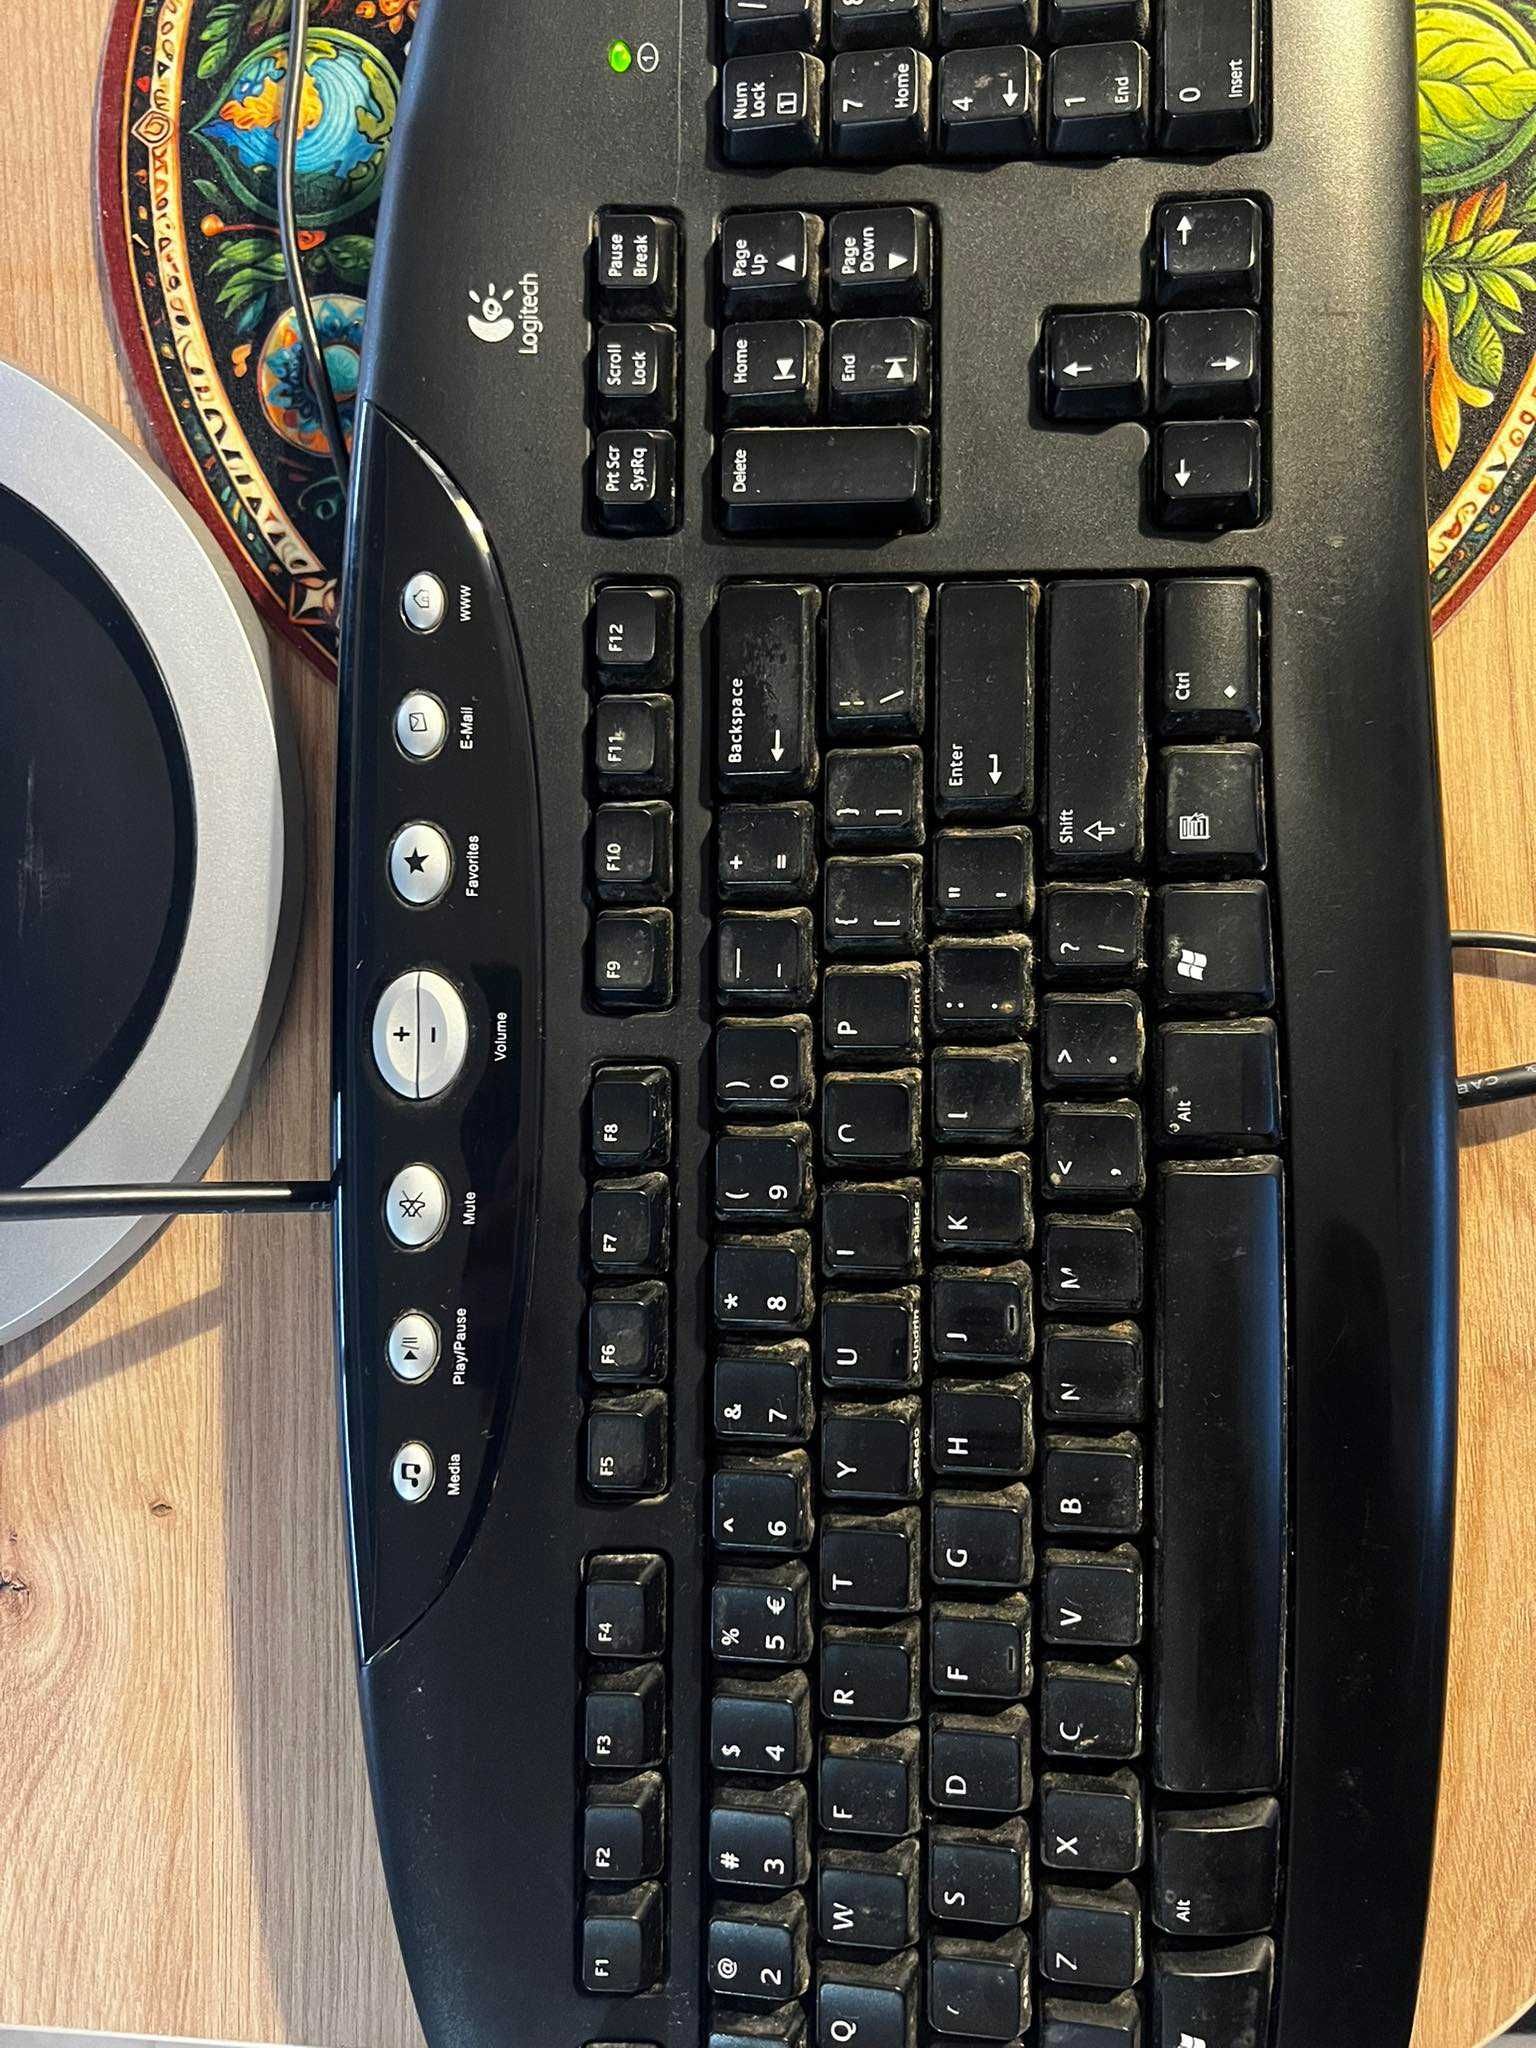 Komputer Intelcore I5 (zestaw z monitorem, klawiaturą i myszą)